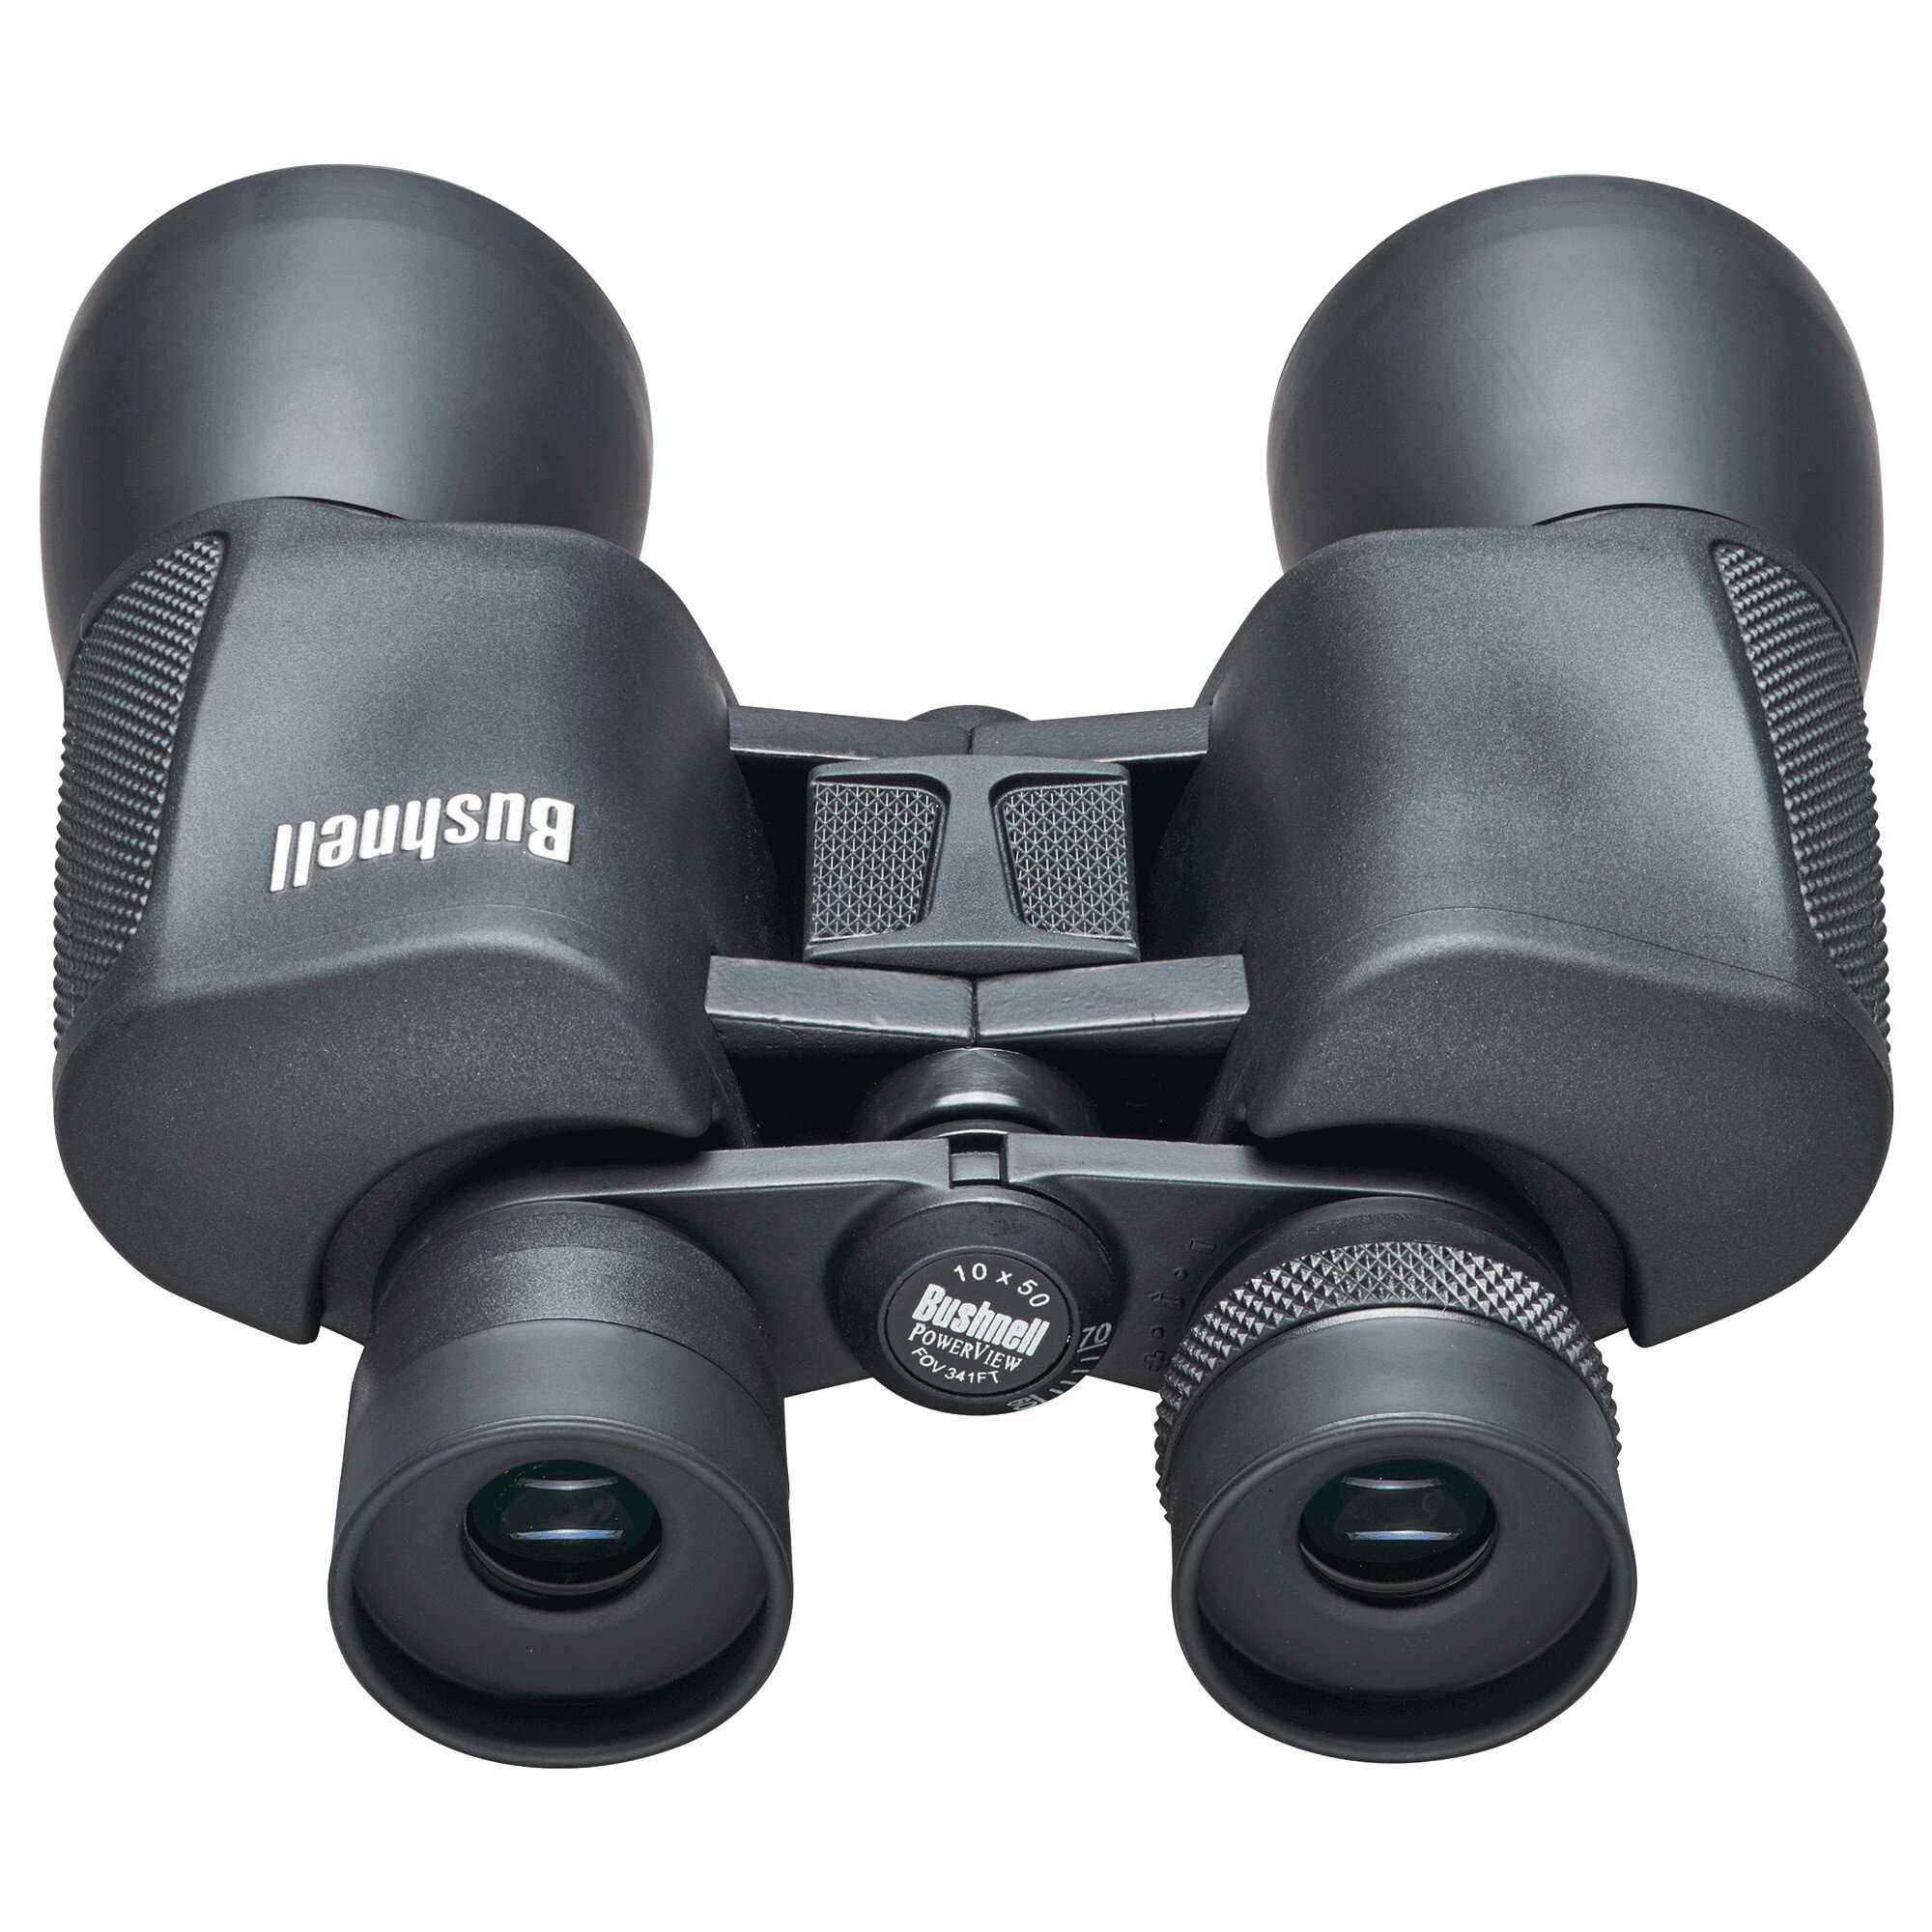 Buy Bushnell PowerView Binocular 10X50 online in Pakistan - Tejar.pk